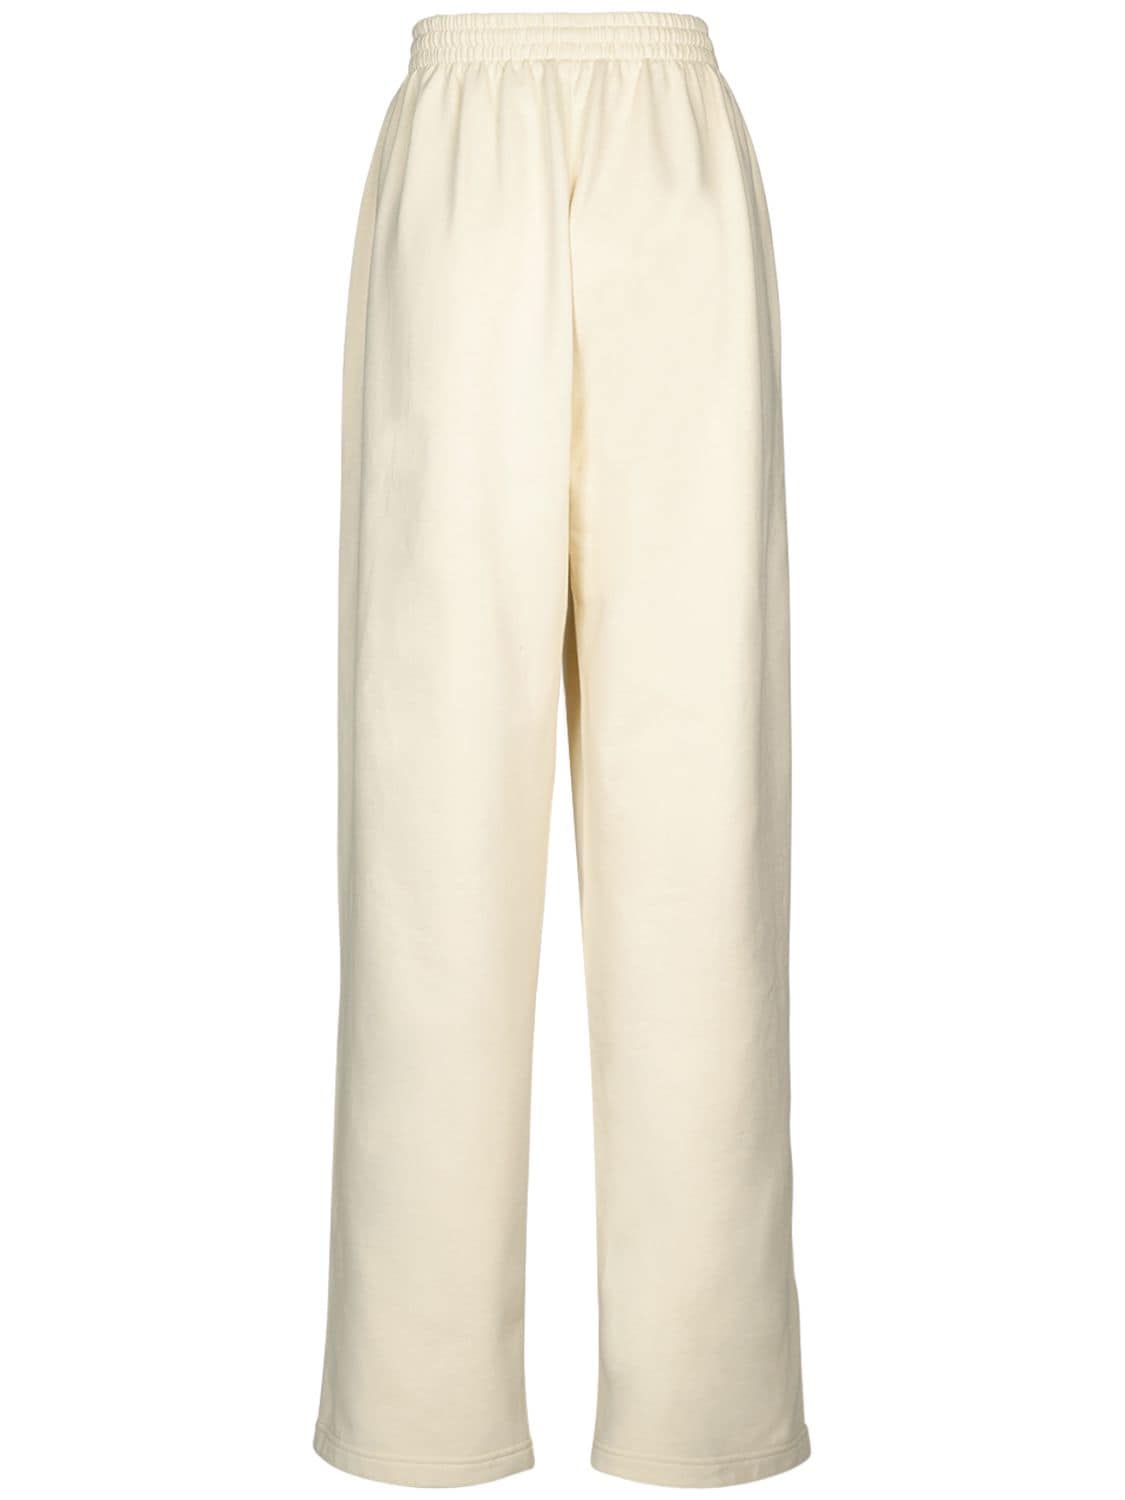 Shop Balenciaga Political Campaign Cotton Jogging Pants In Cream